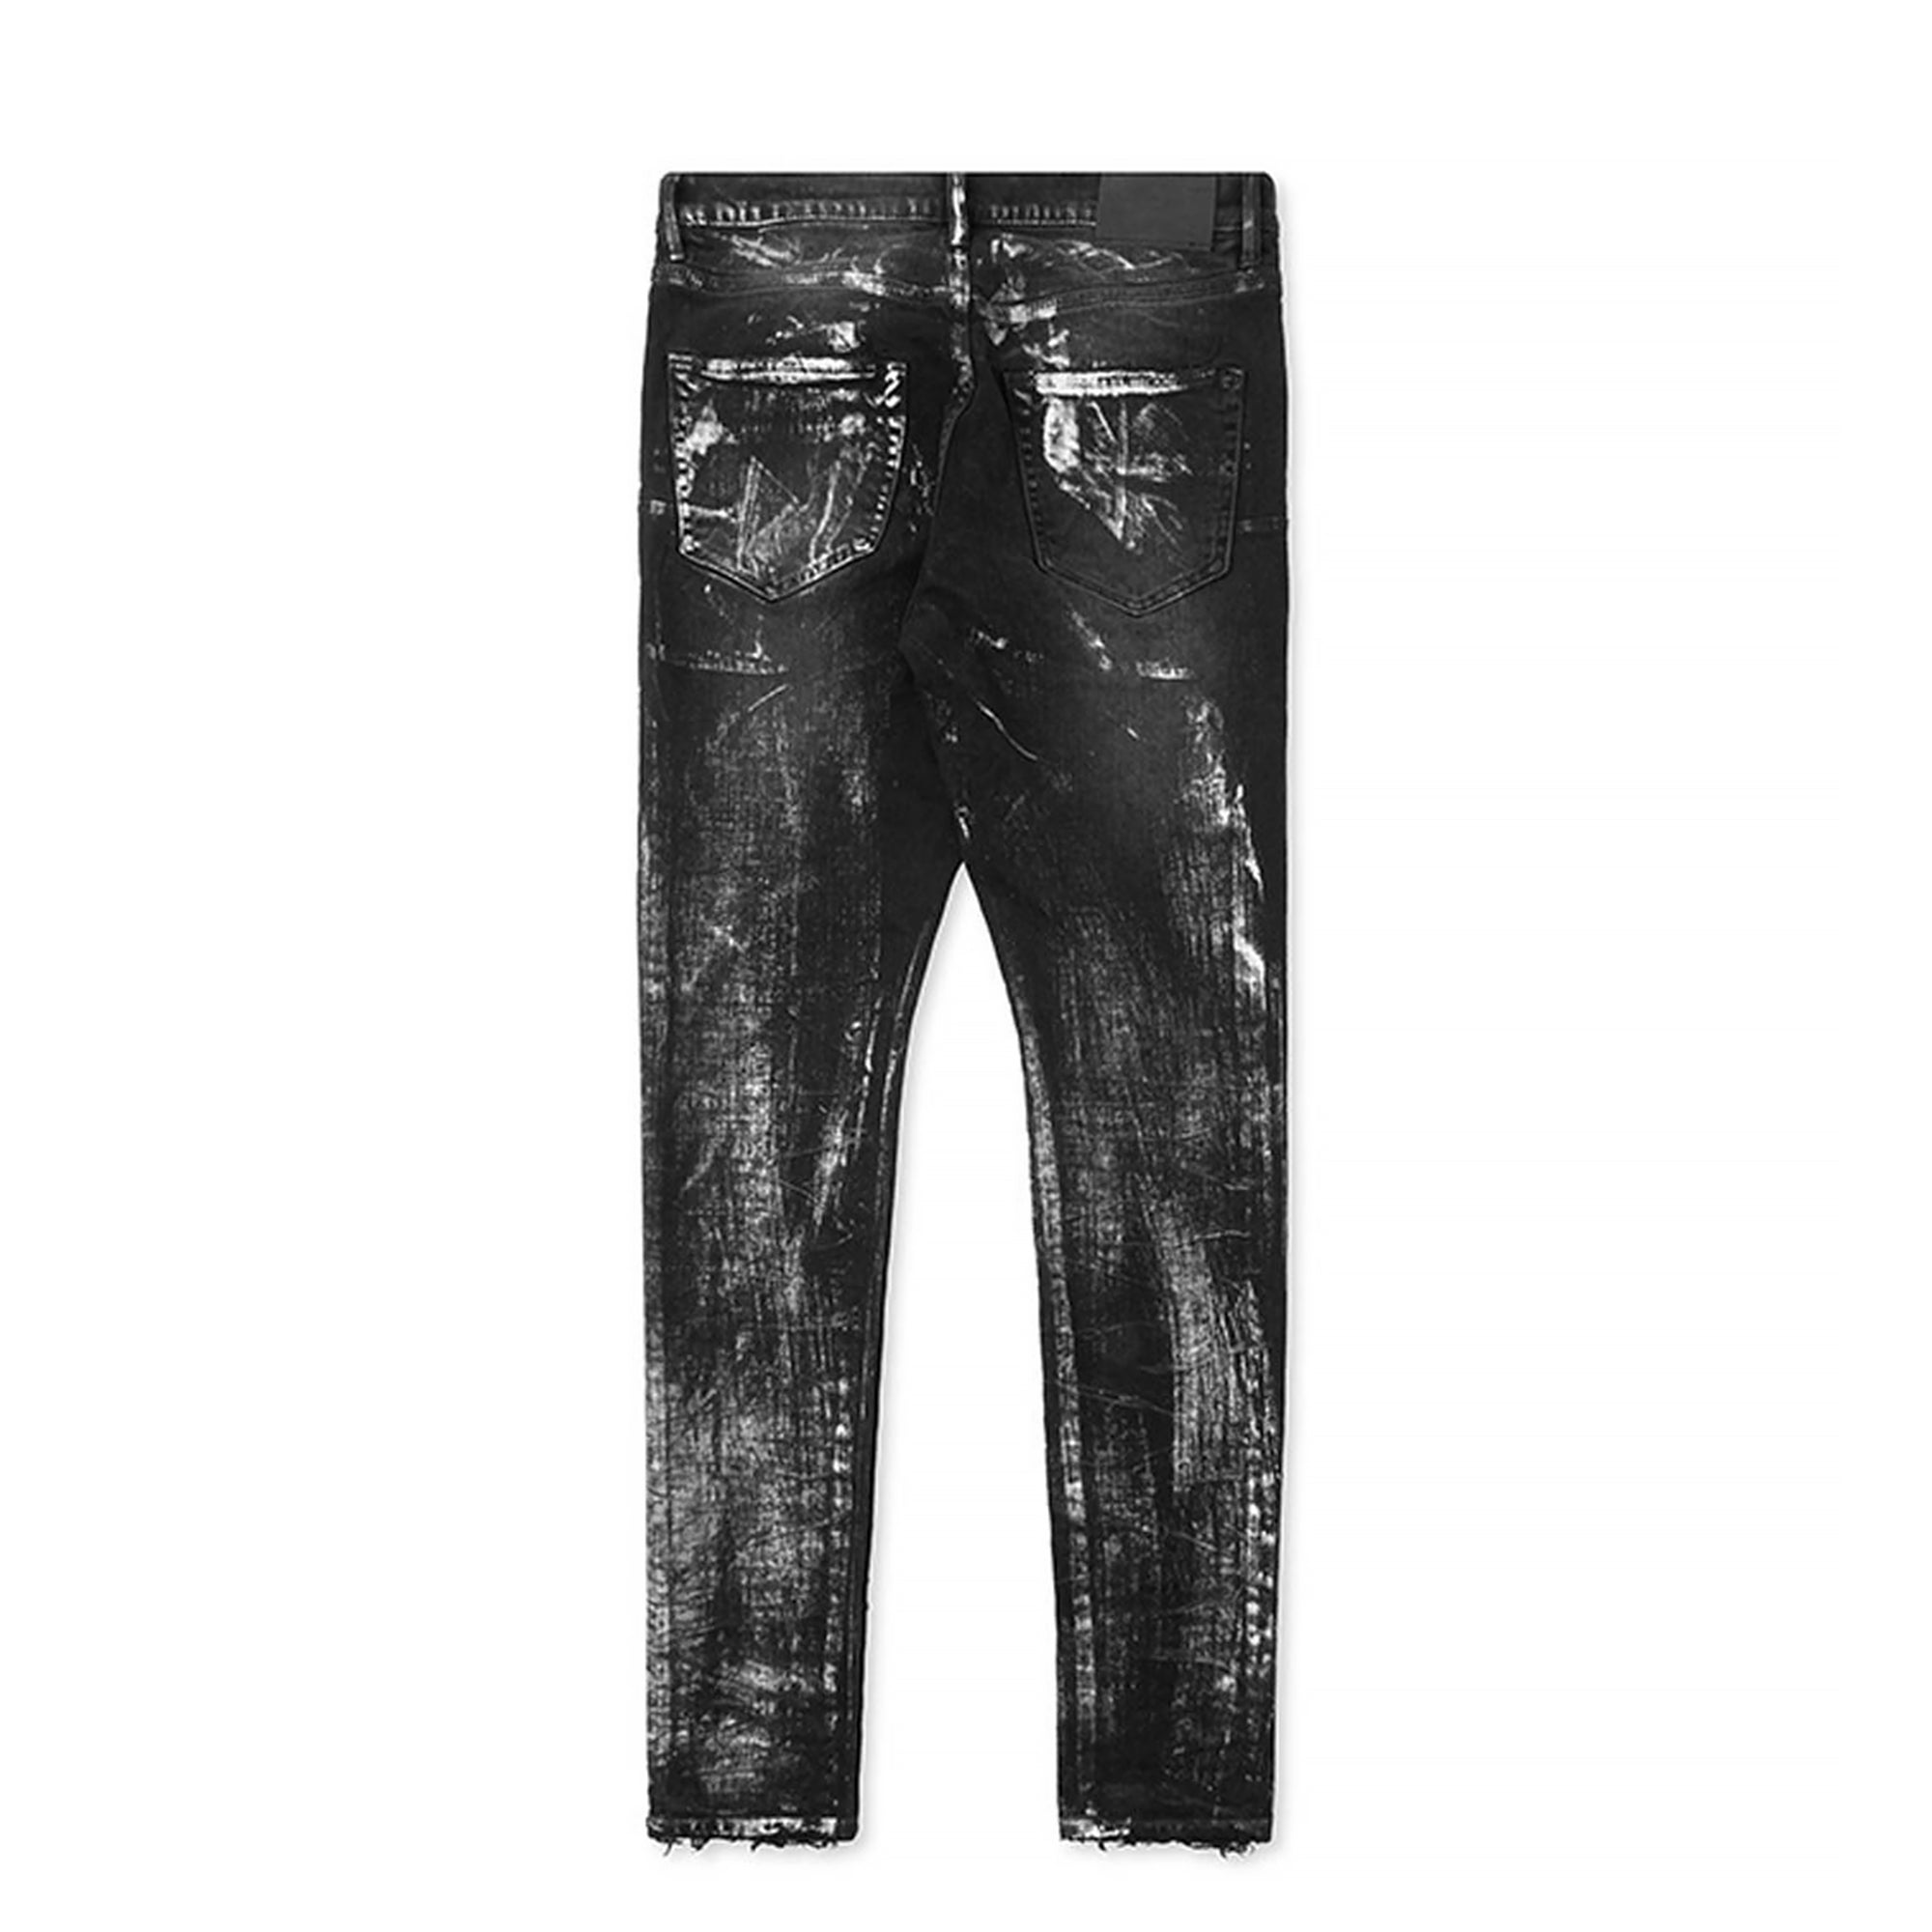 Purple Brand Jeans Big Bleach Blowout Black P002 Men's Jeans Sz 29 x 33